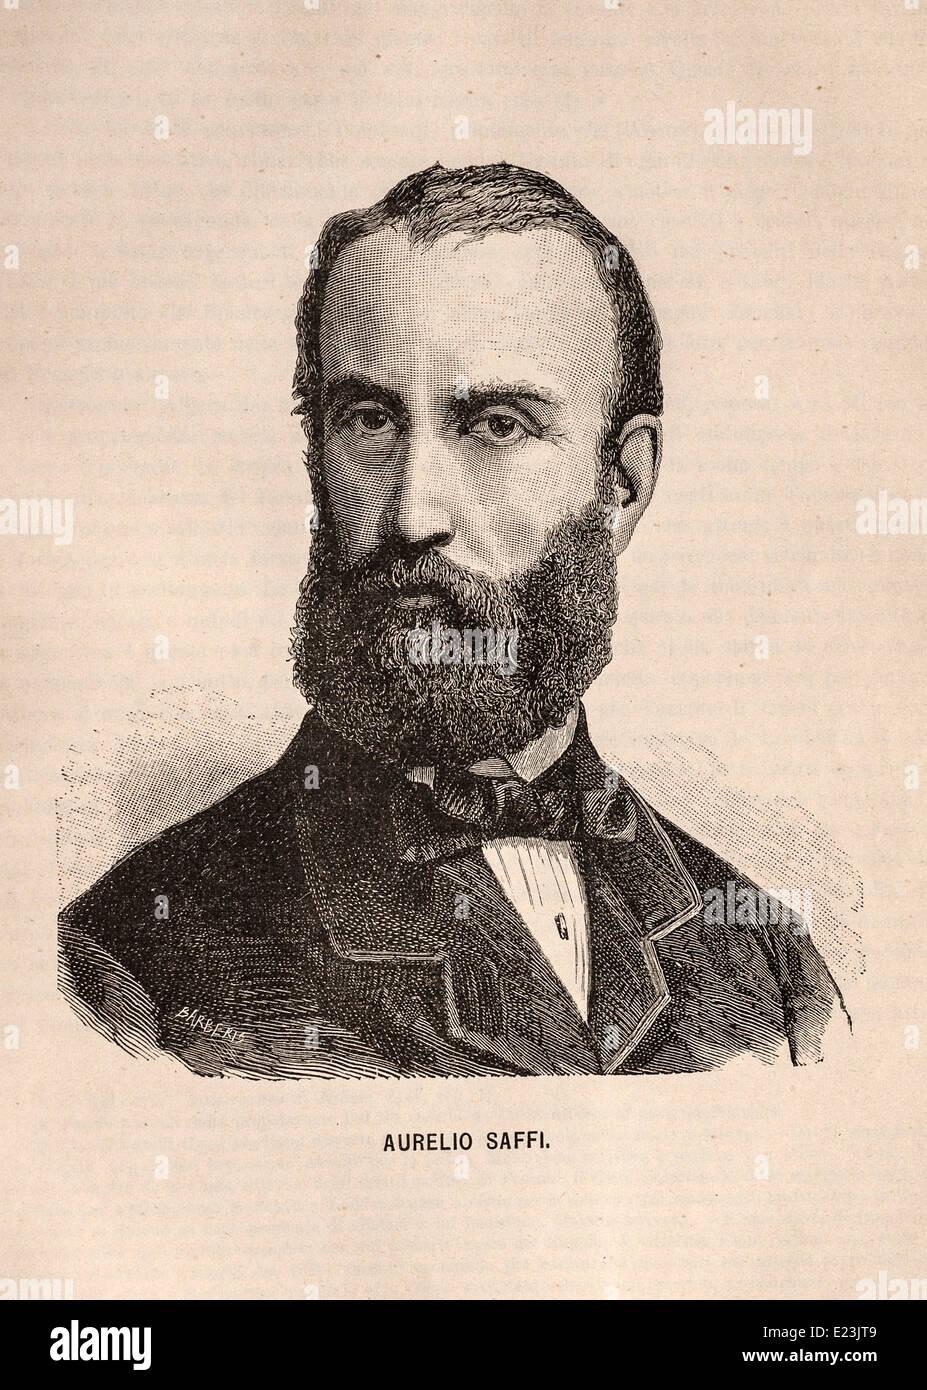 Giuseppe Mazzini aus dem Buch der Jessie W. Mario des Lebens von Mazzini. Porträt von Aurelio Saffi Stockfoto